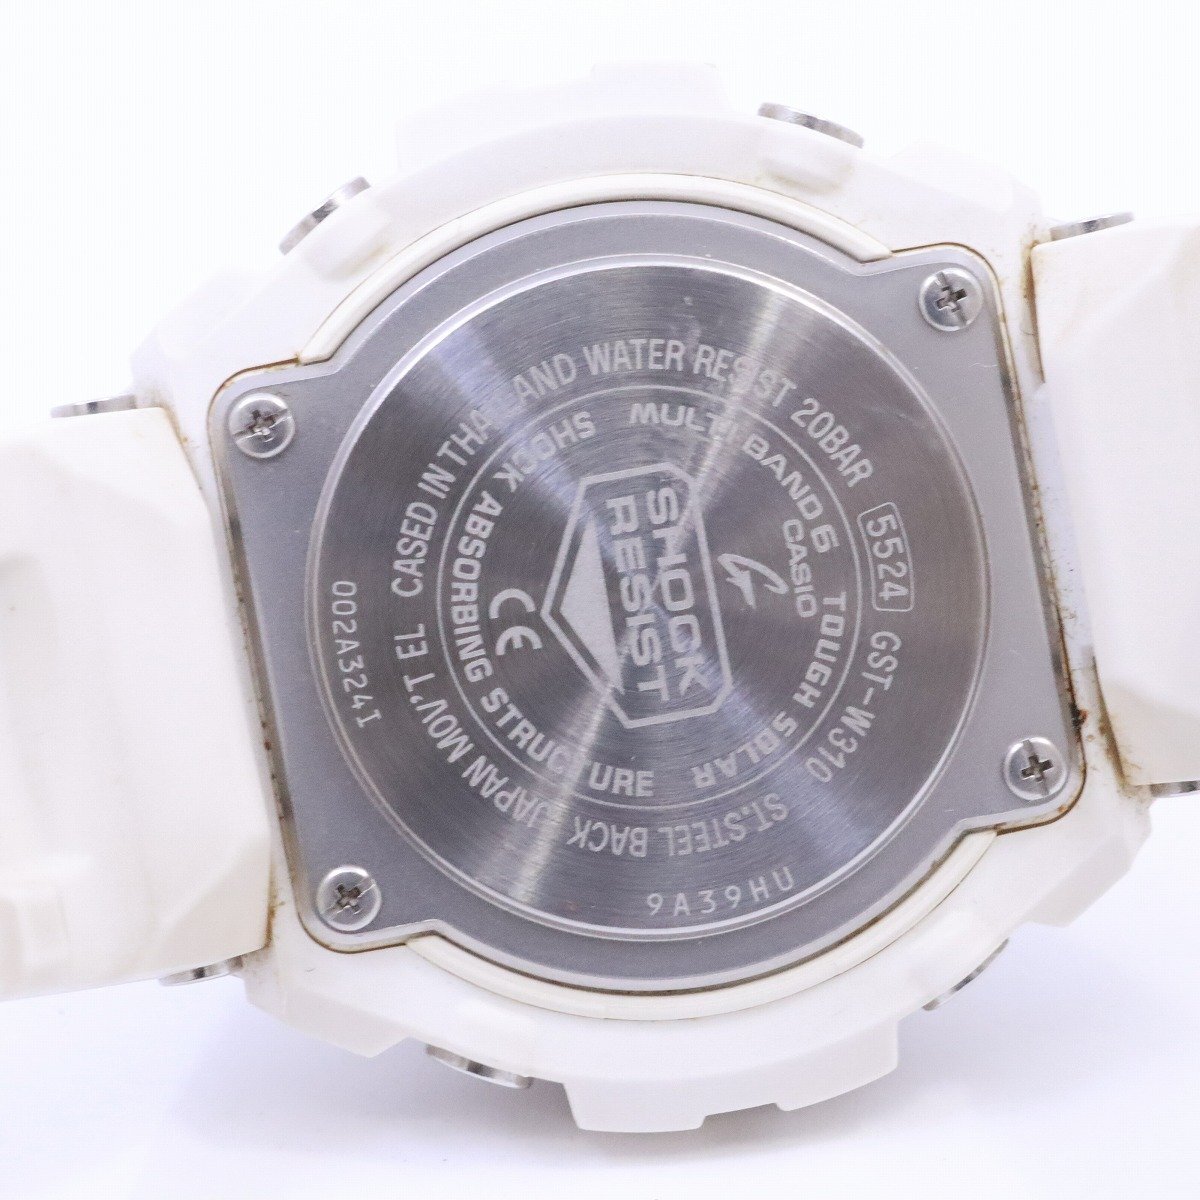 カシオ G-SHOCK Gスチール ソーラー電波 メンズ 腕時計 ミドルサイズ アナデジモデル ホワイト GST-W310-7AJF【いおき質店】_画像8